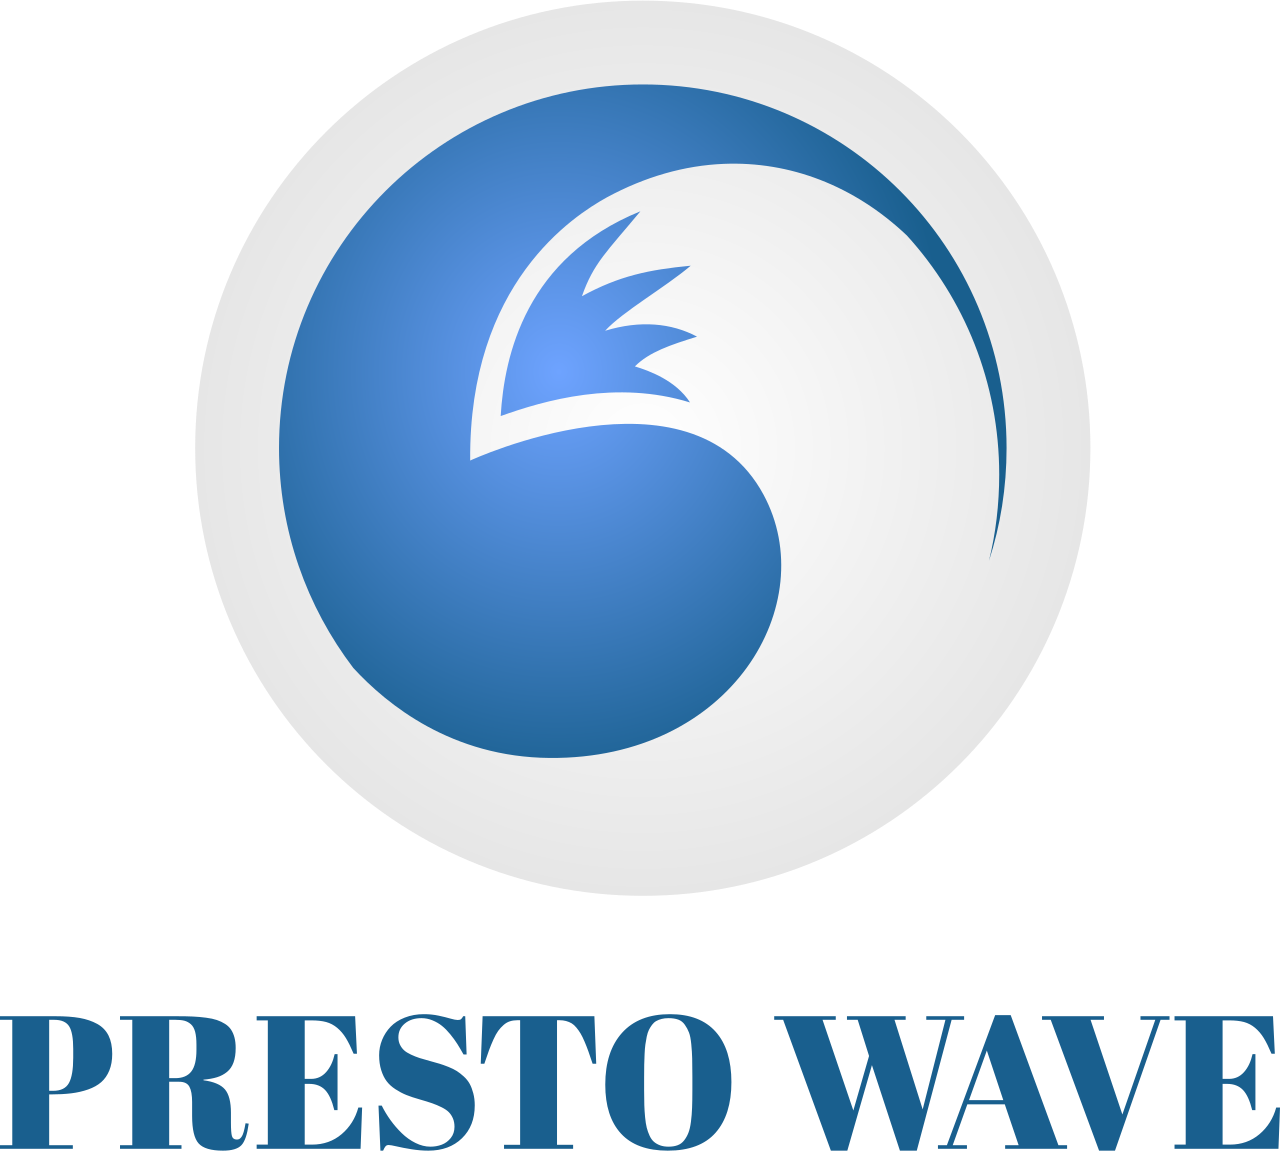 PRESTO WAVE's web page